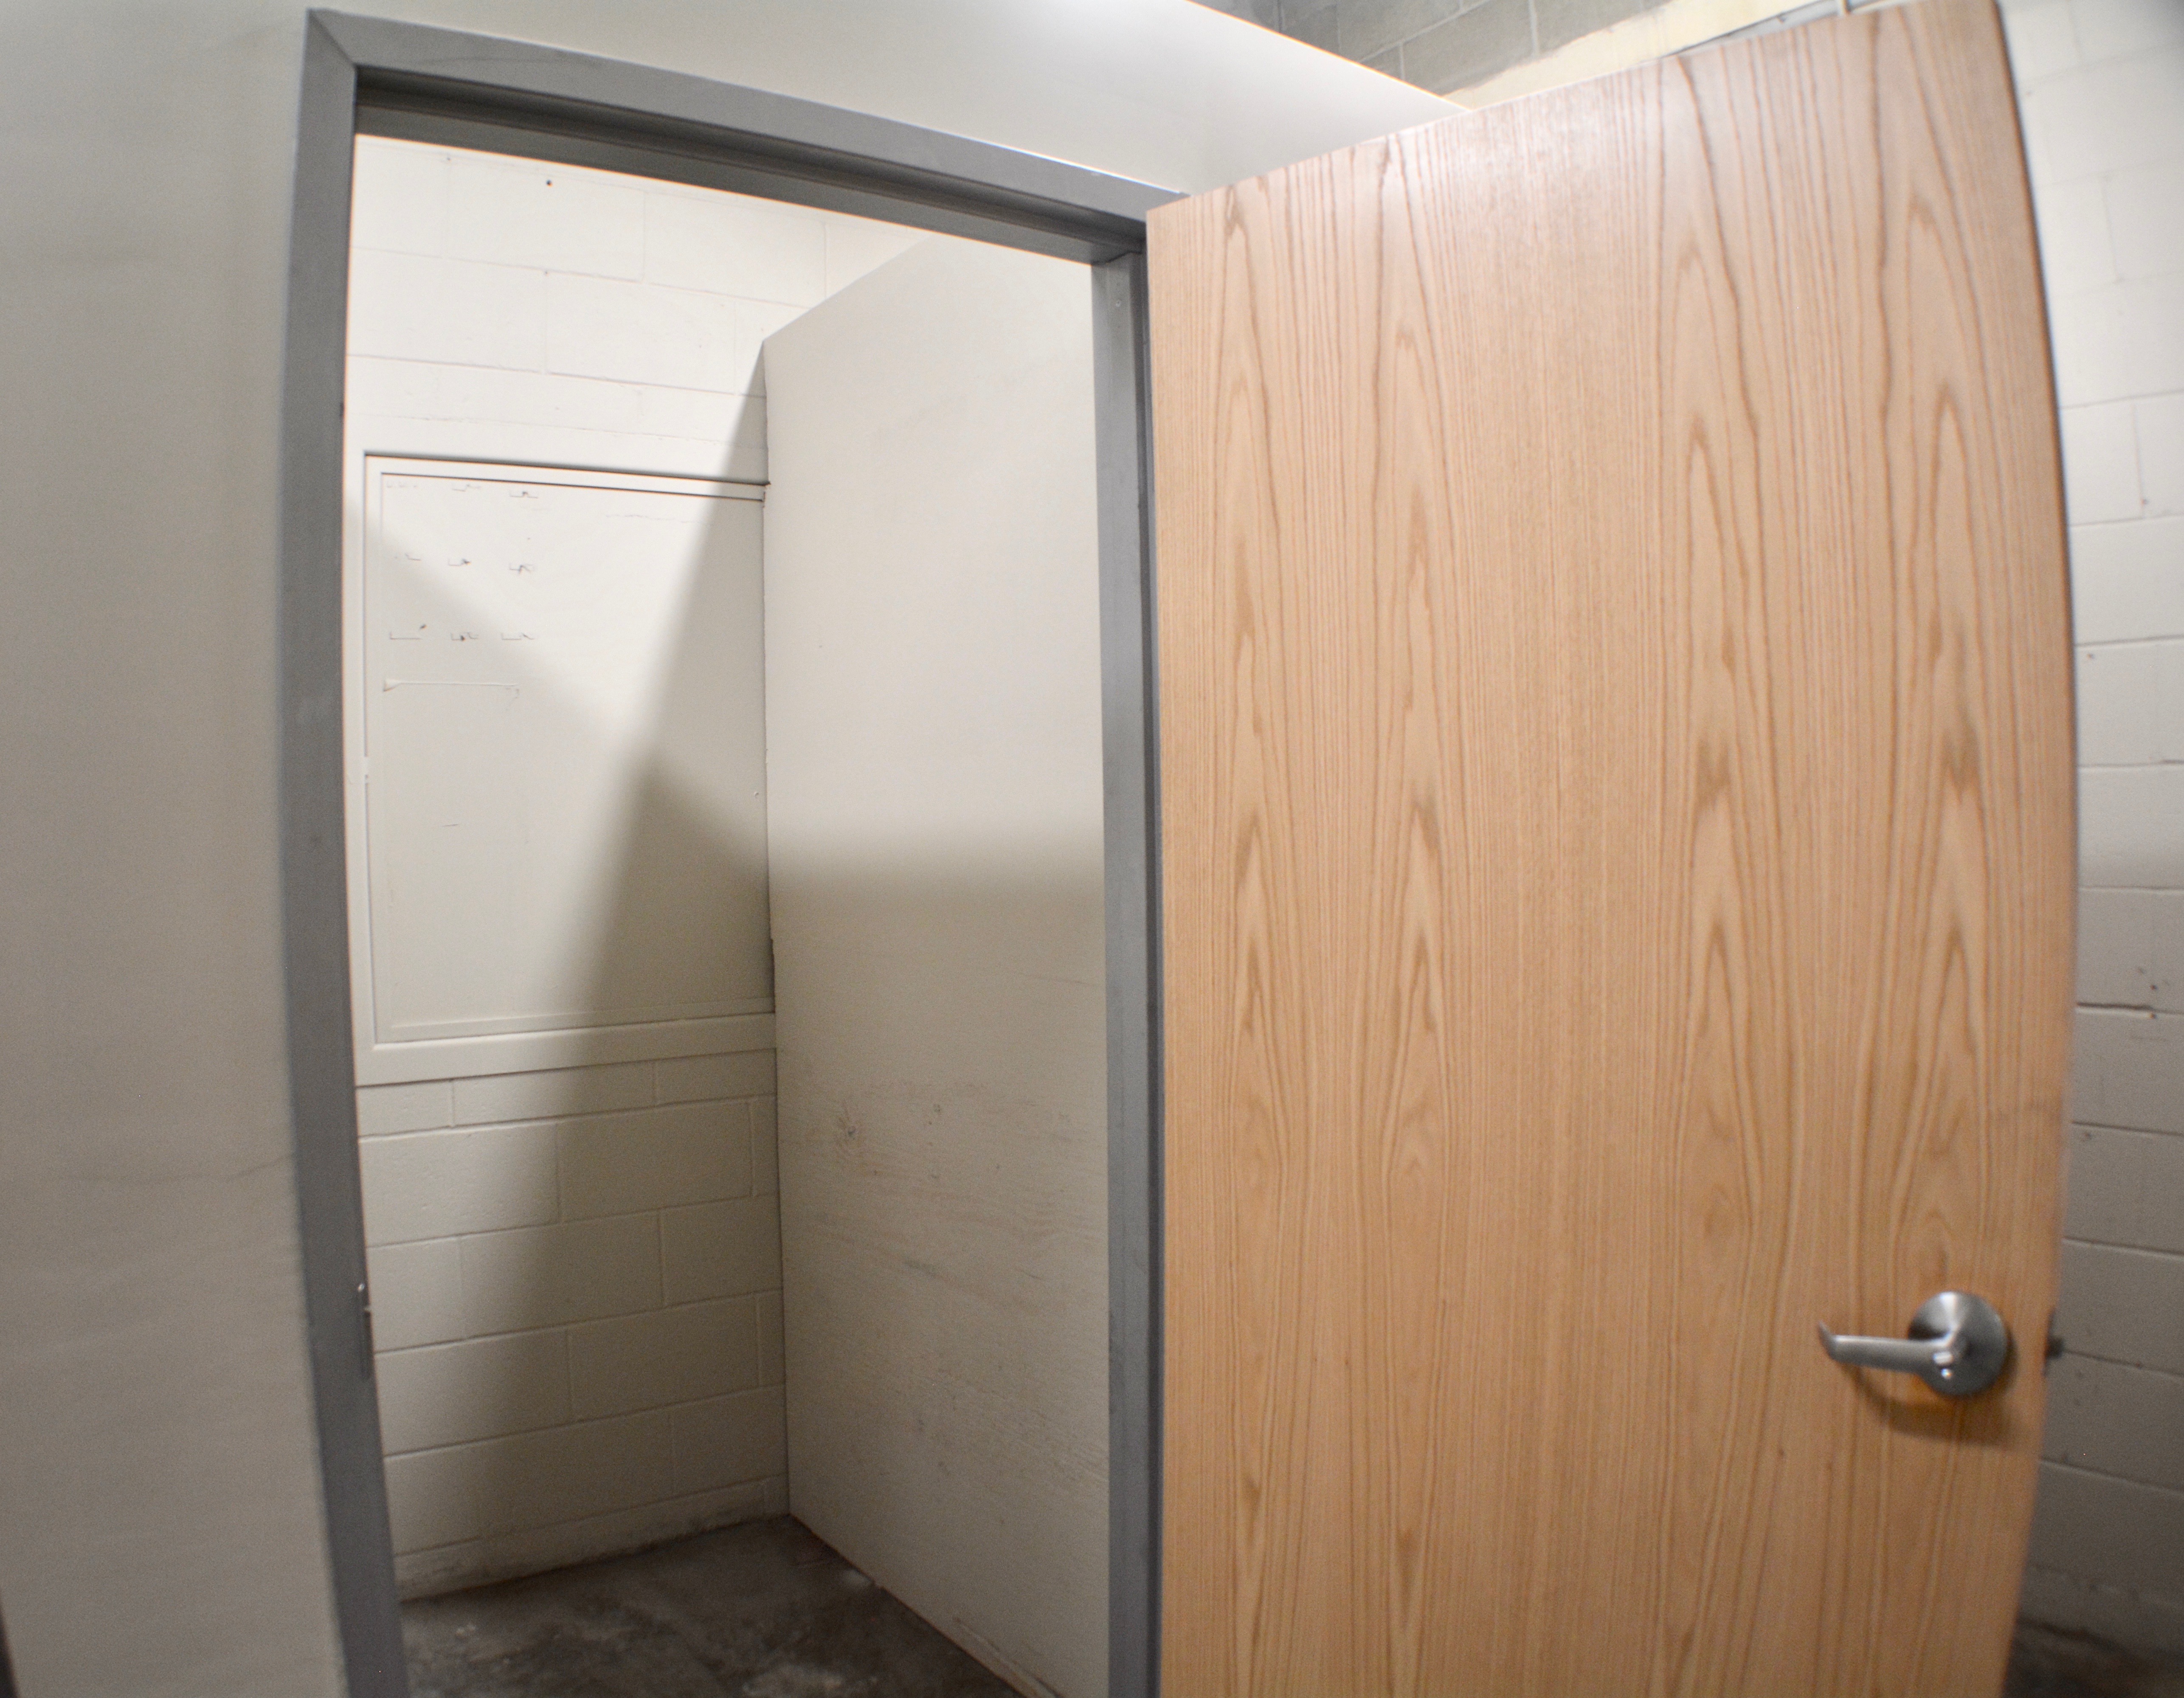 self storage unit with open door